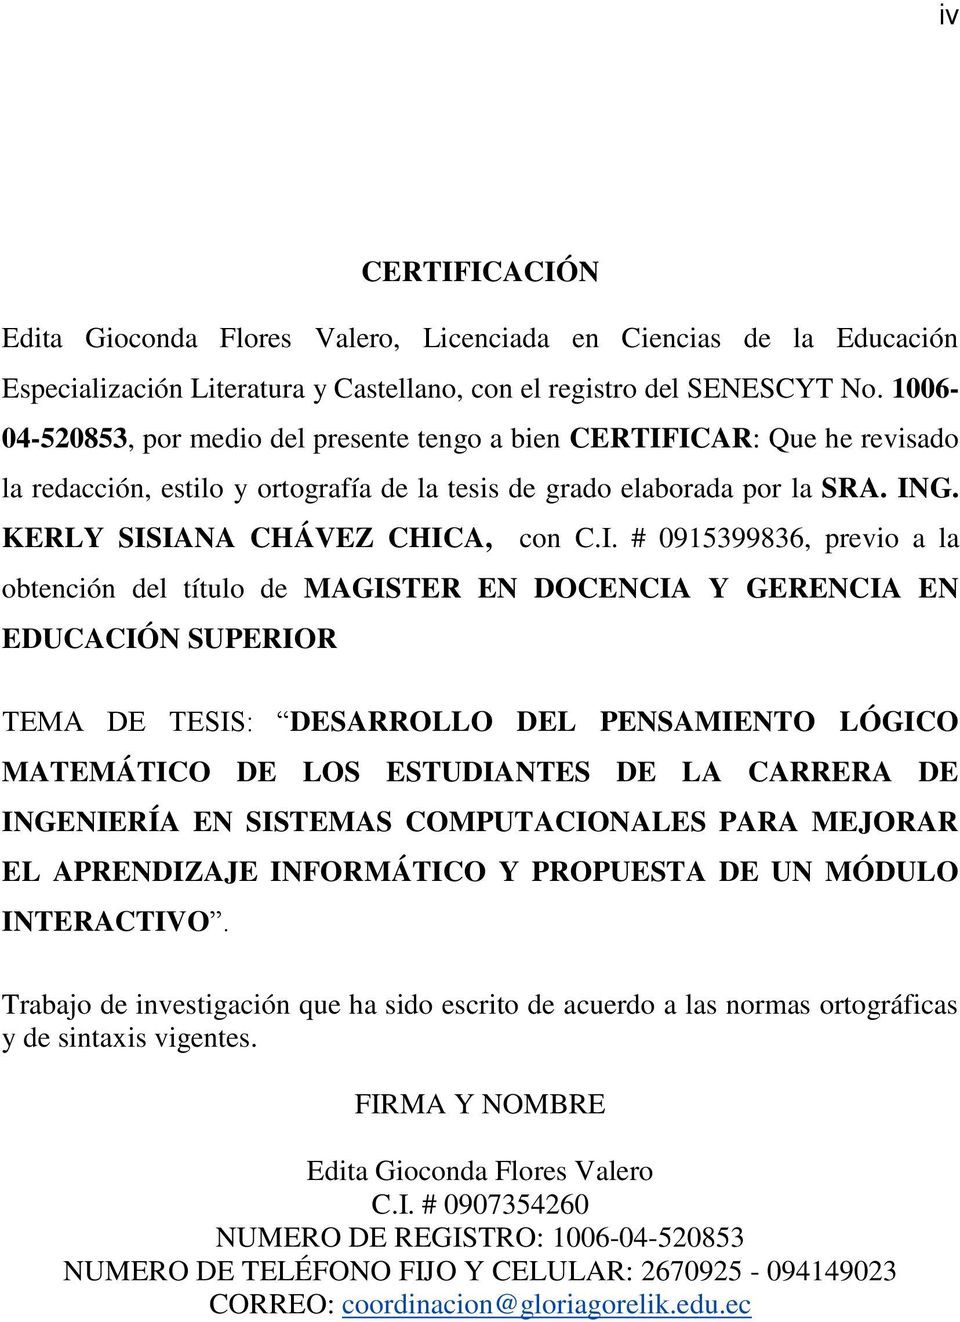 ICAR: Que he revisado la redacción, estilo y ortografía de la tesis de grado elaborada por la SRA. ING. KERLY SISIANA CHÁVEZ CHICA, con C.I. # 0915399836, previo a la obtención del título de MAGISTER